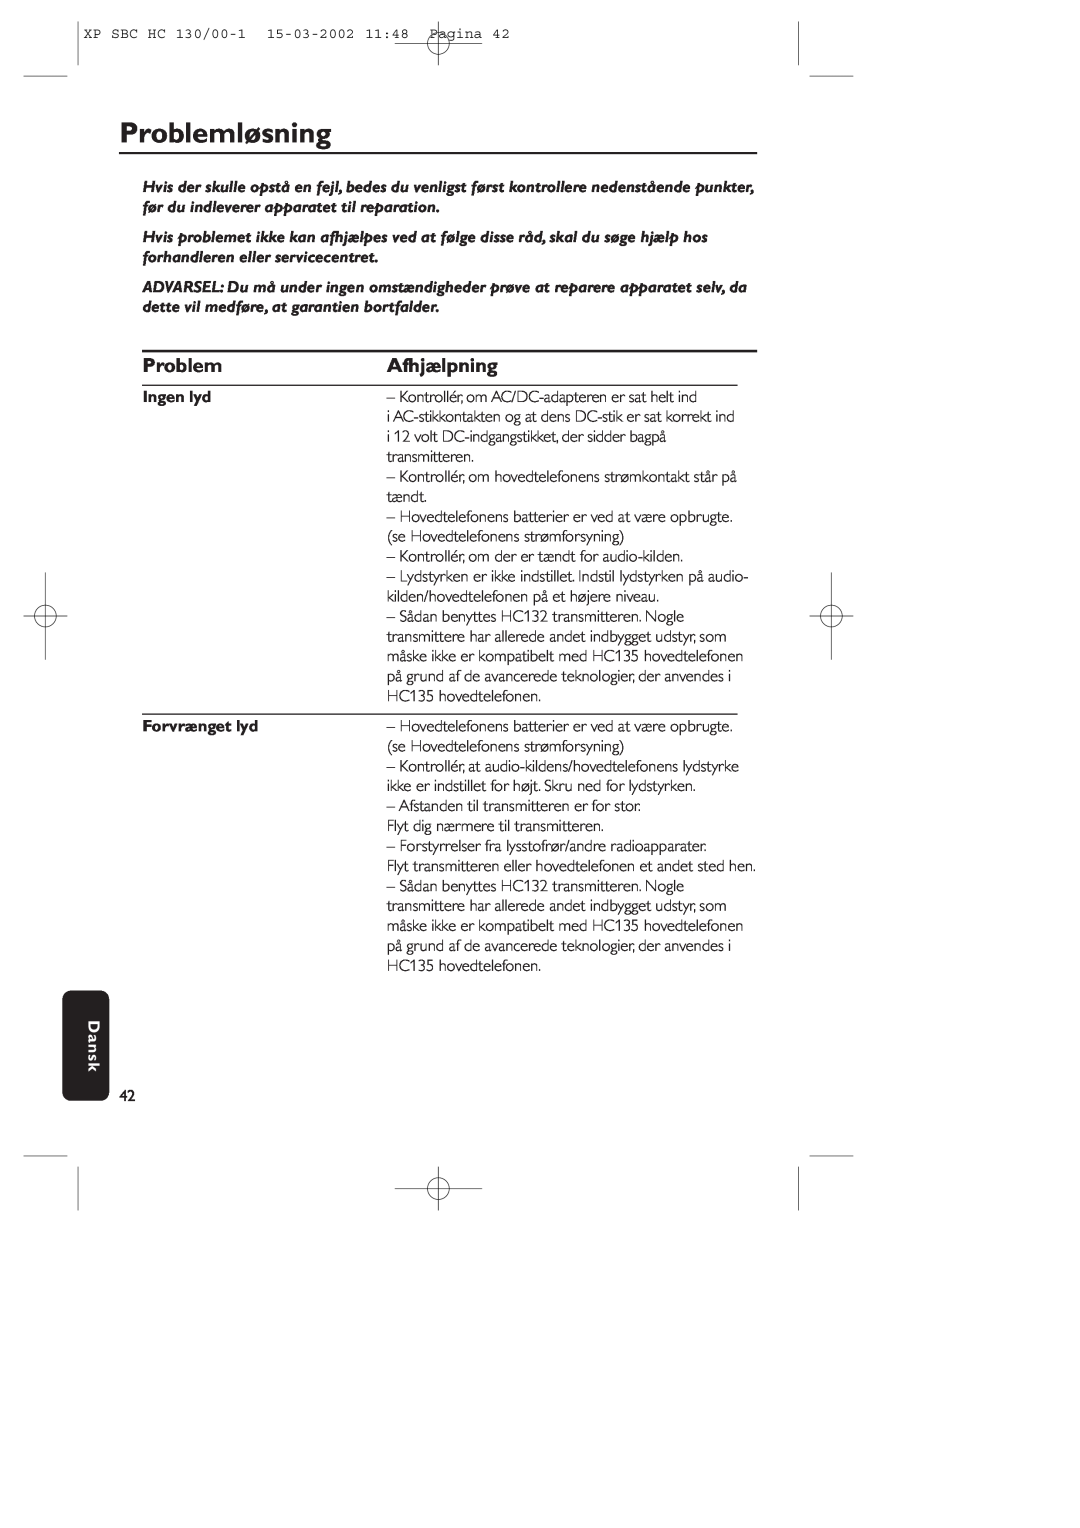 Philips SBC HC130 manual Problemløsning, Afhjælpning, Ingen lyd, Forvrænget lyd, Dansk 